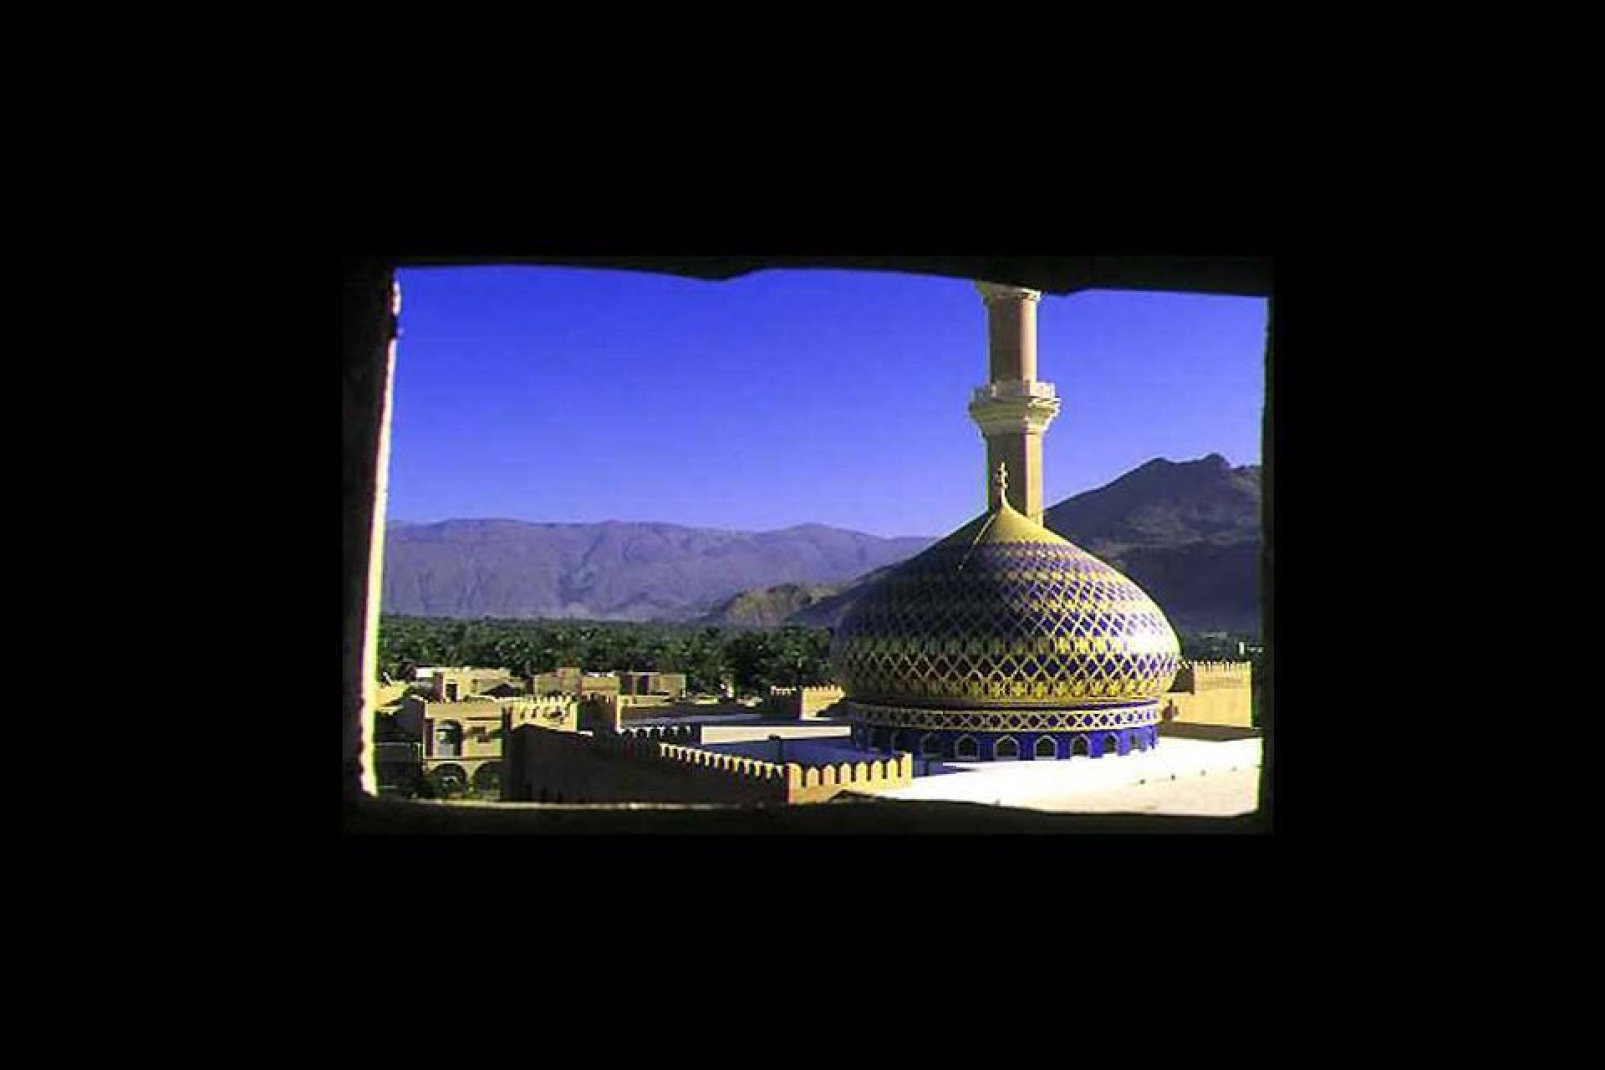 Vom Wehrgang des Forts aus hat man einen schönen Blick auf die Region mit ihren Palmenhainen und der blauen Kuppel der Moschee im Vordergrund.